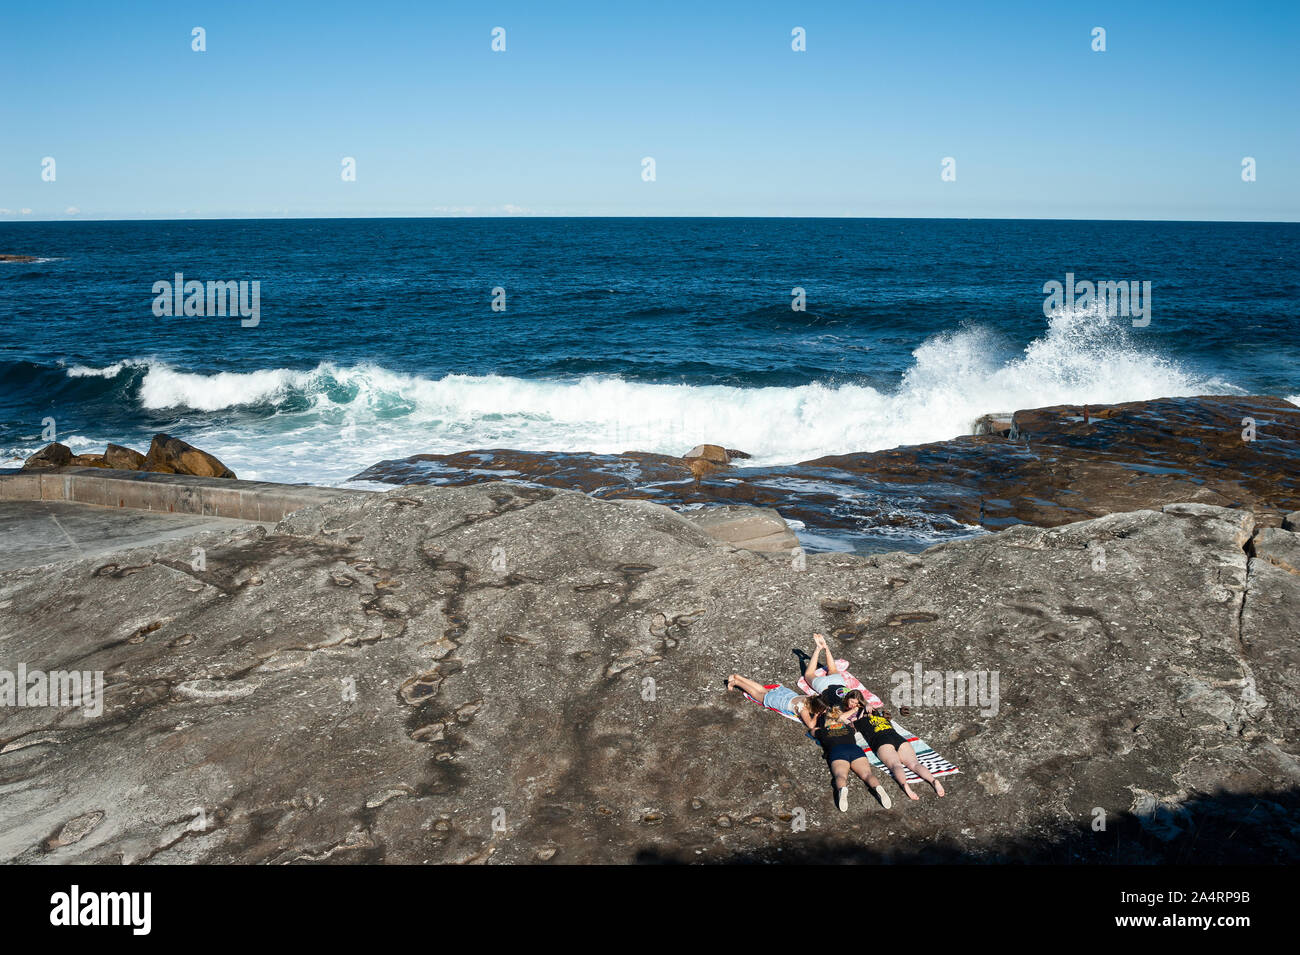 24.09.2019, Sydney, New South Wales, Australia - un grupo de chicas sunbathes sobre los acantilados de Tom Caddy Clovelly punto cerca de la playa. Foto de stock